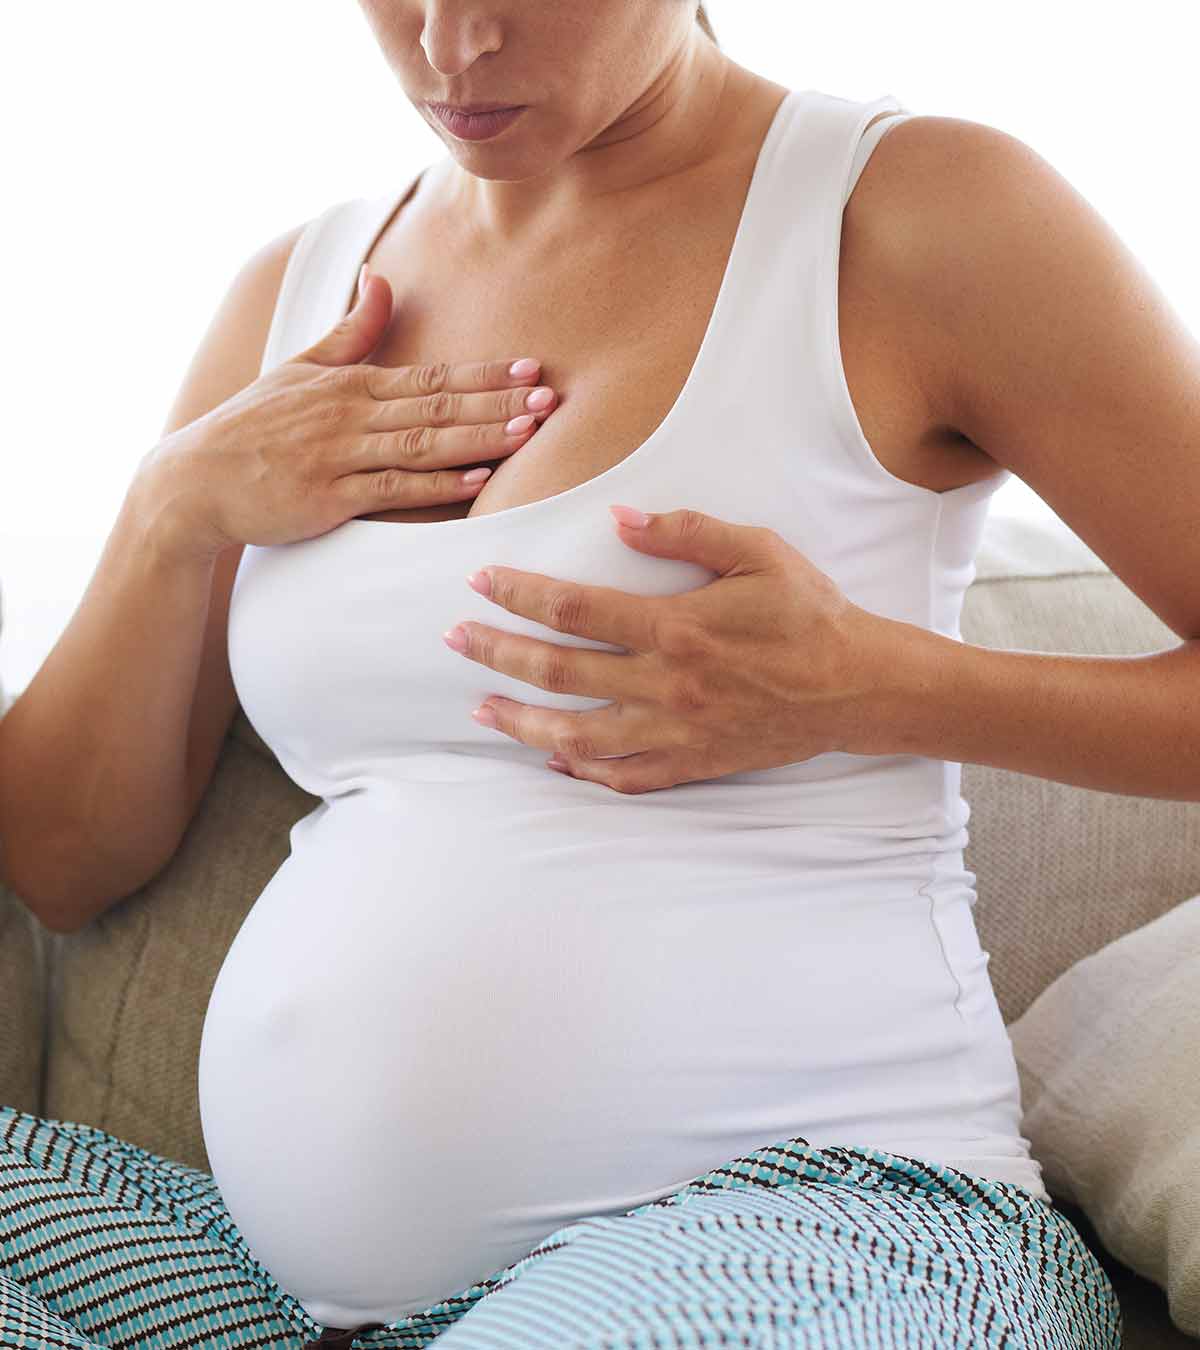 乳头刺激能诱导分娩吗?如何进行?